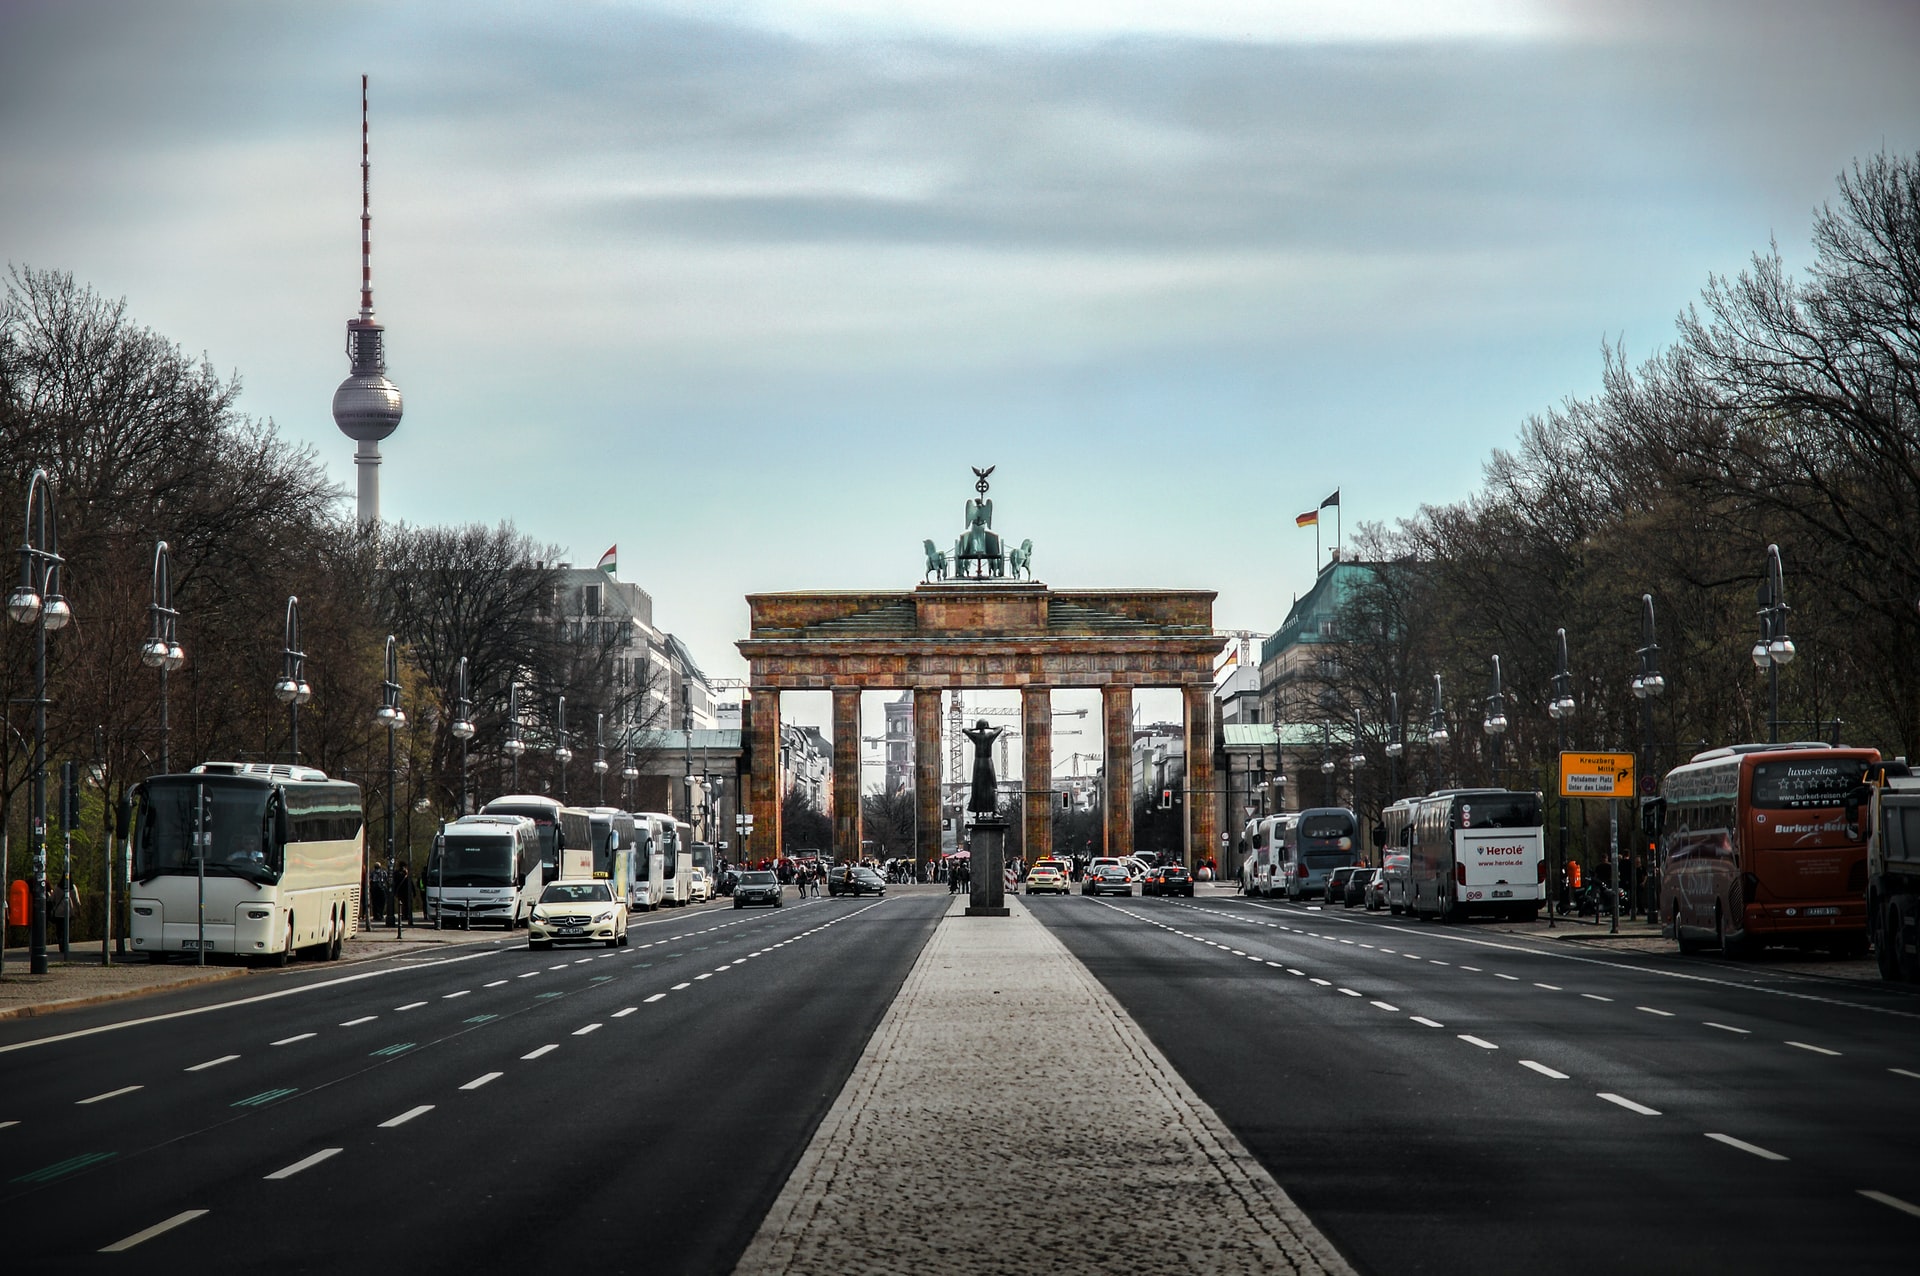 Almanya'da işçi olmak isteyenler dikkat! Yeni göç yasası ne getiriyor?